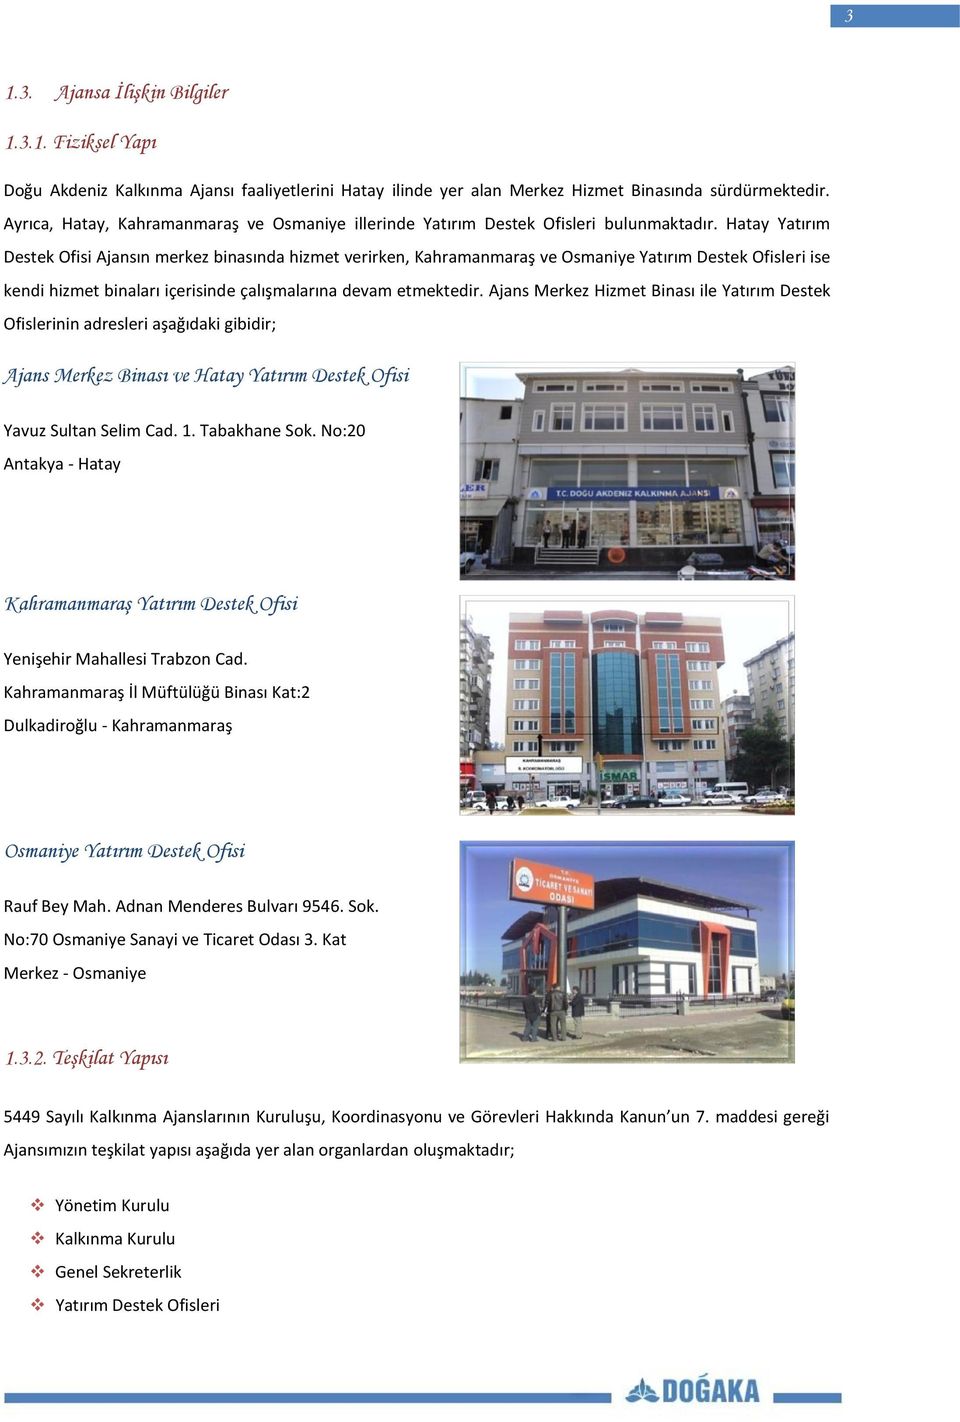 Hatay Yatırım Destek Ofisi Ajansın merkez binasında hizmet verirken, Kahramanmaraş ve Osmaniye Yatırım Destek Ofisleri ise kendi hizmet binaları içerisinde çalışmalarına devam etmektedir.